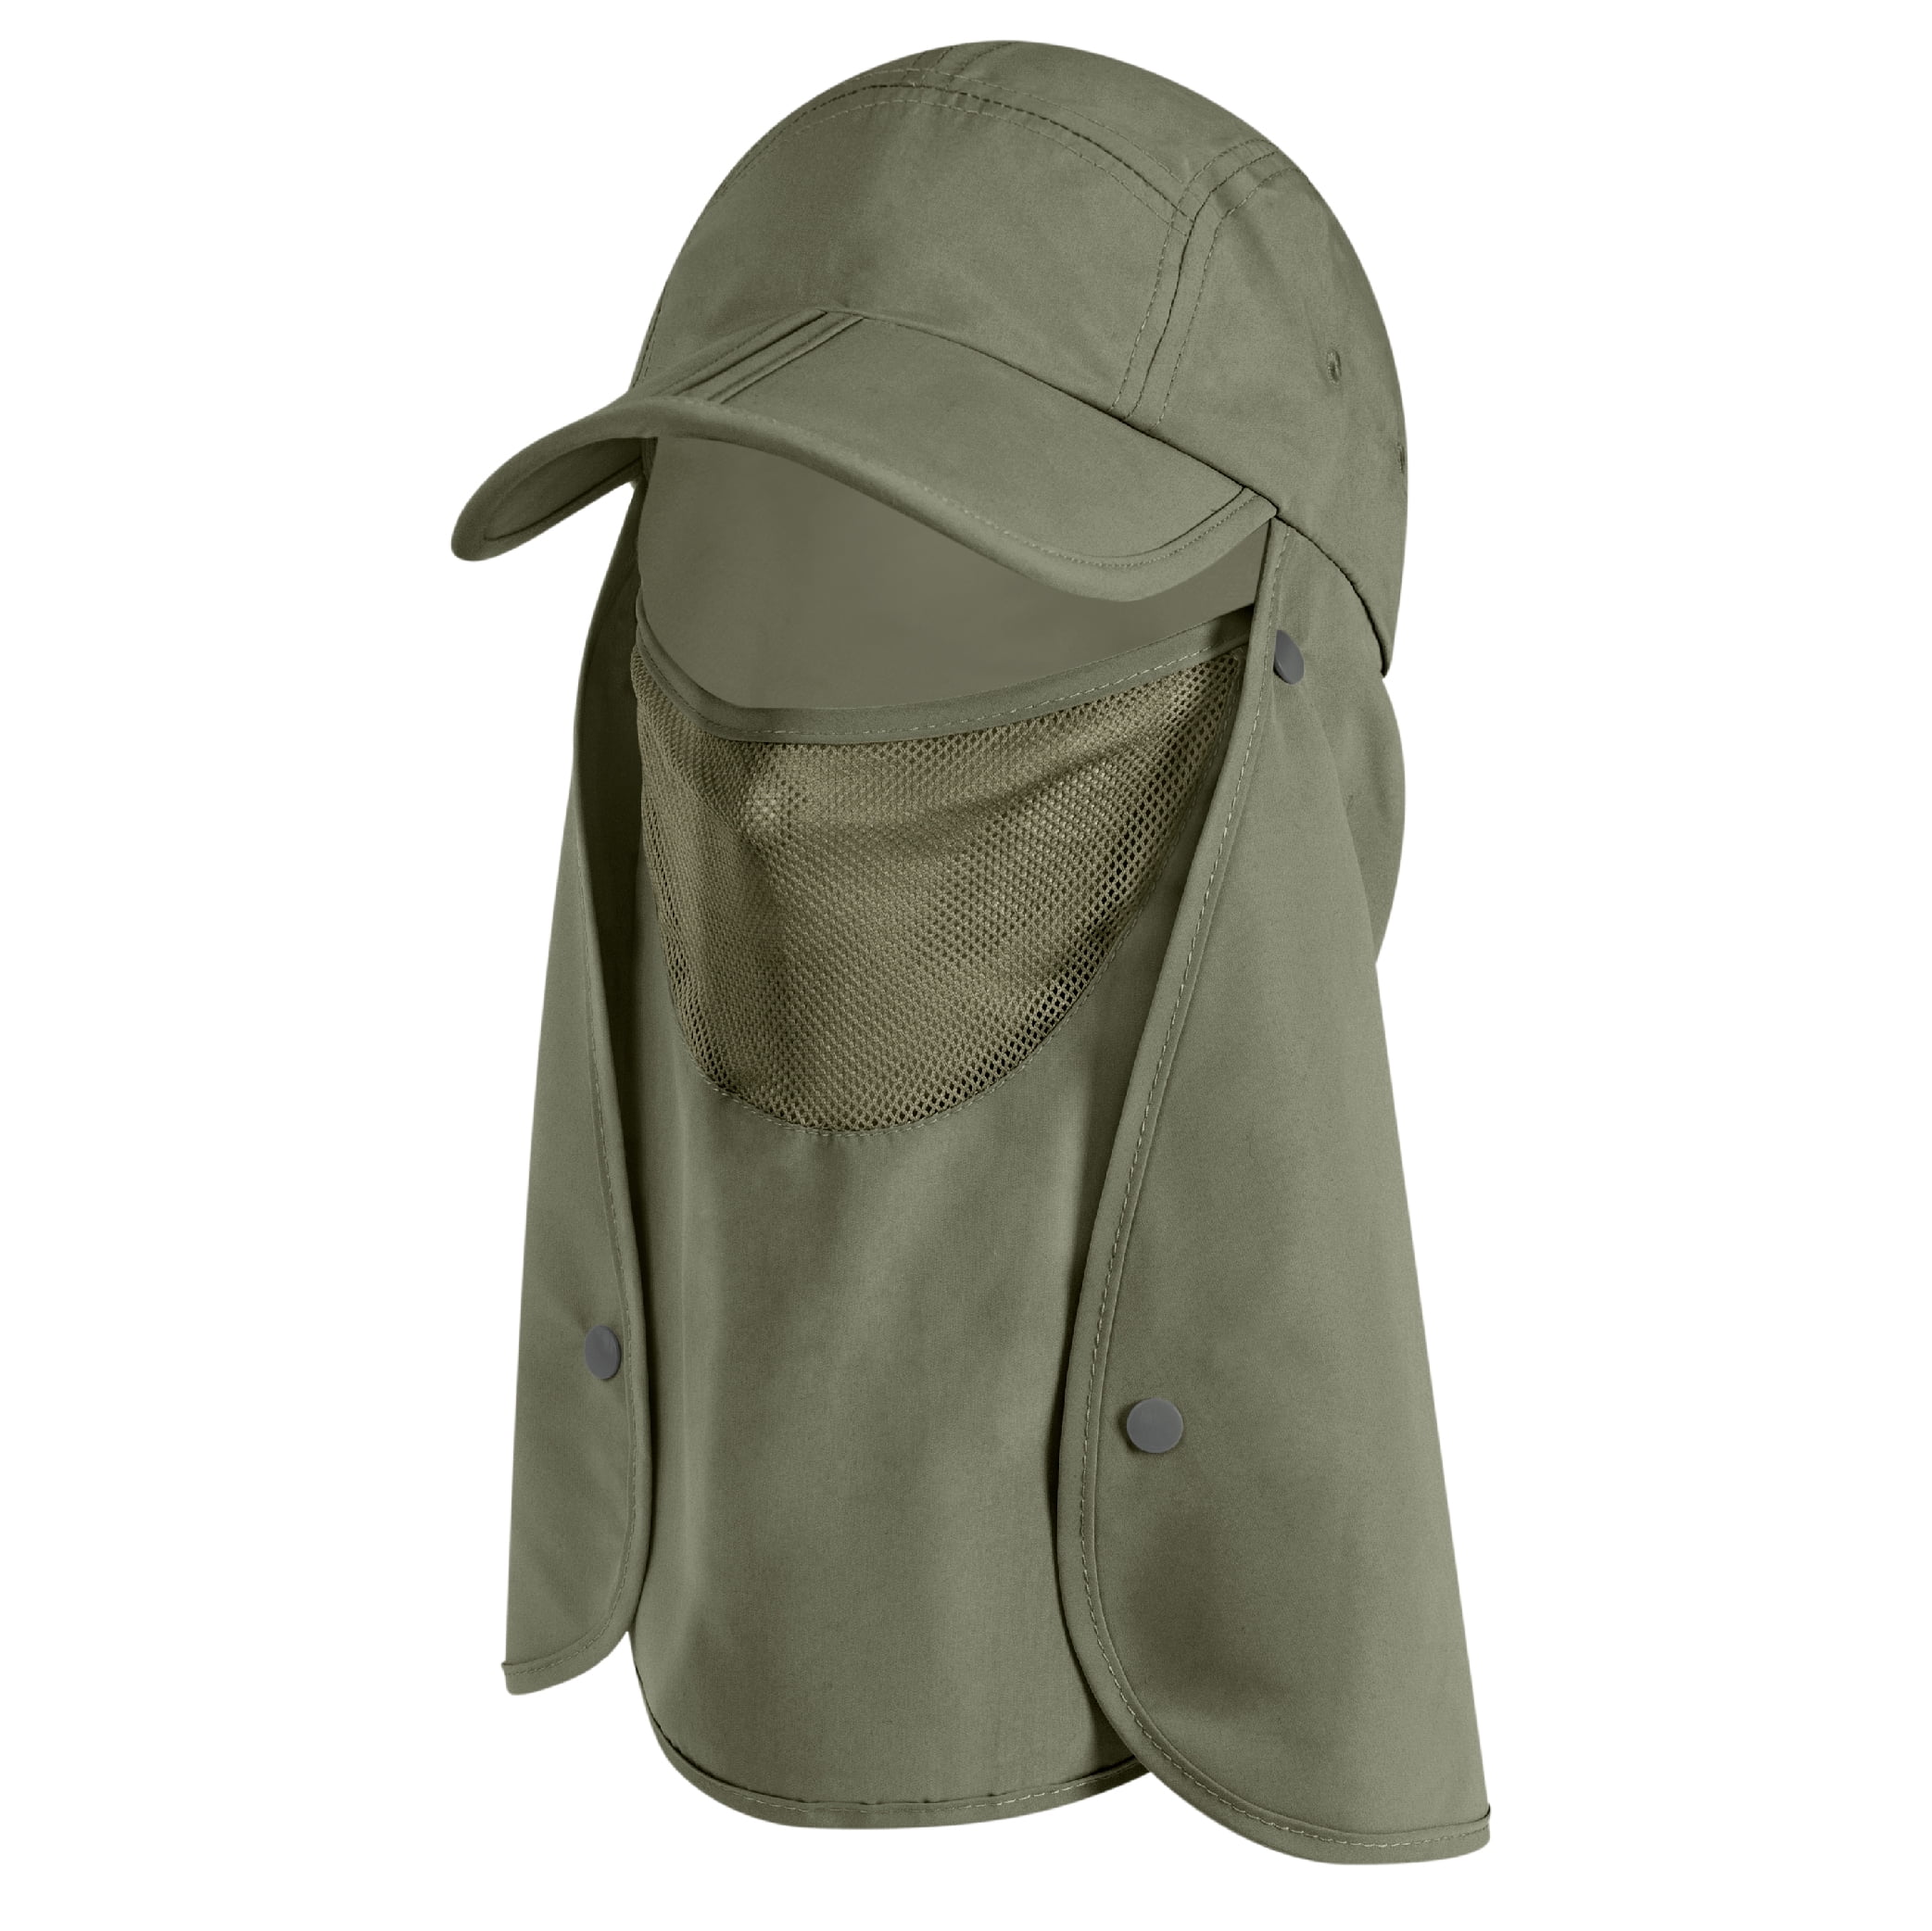 Head Net Hat Safari Caps Sun Protection Bucket Hat with Net Mesh for  Outdoor Fishing Hiking Gardening Men or Women Free Shipping - AliExpress